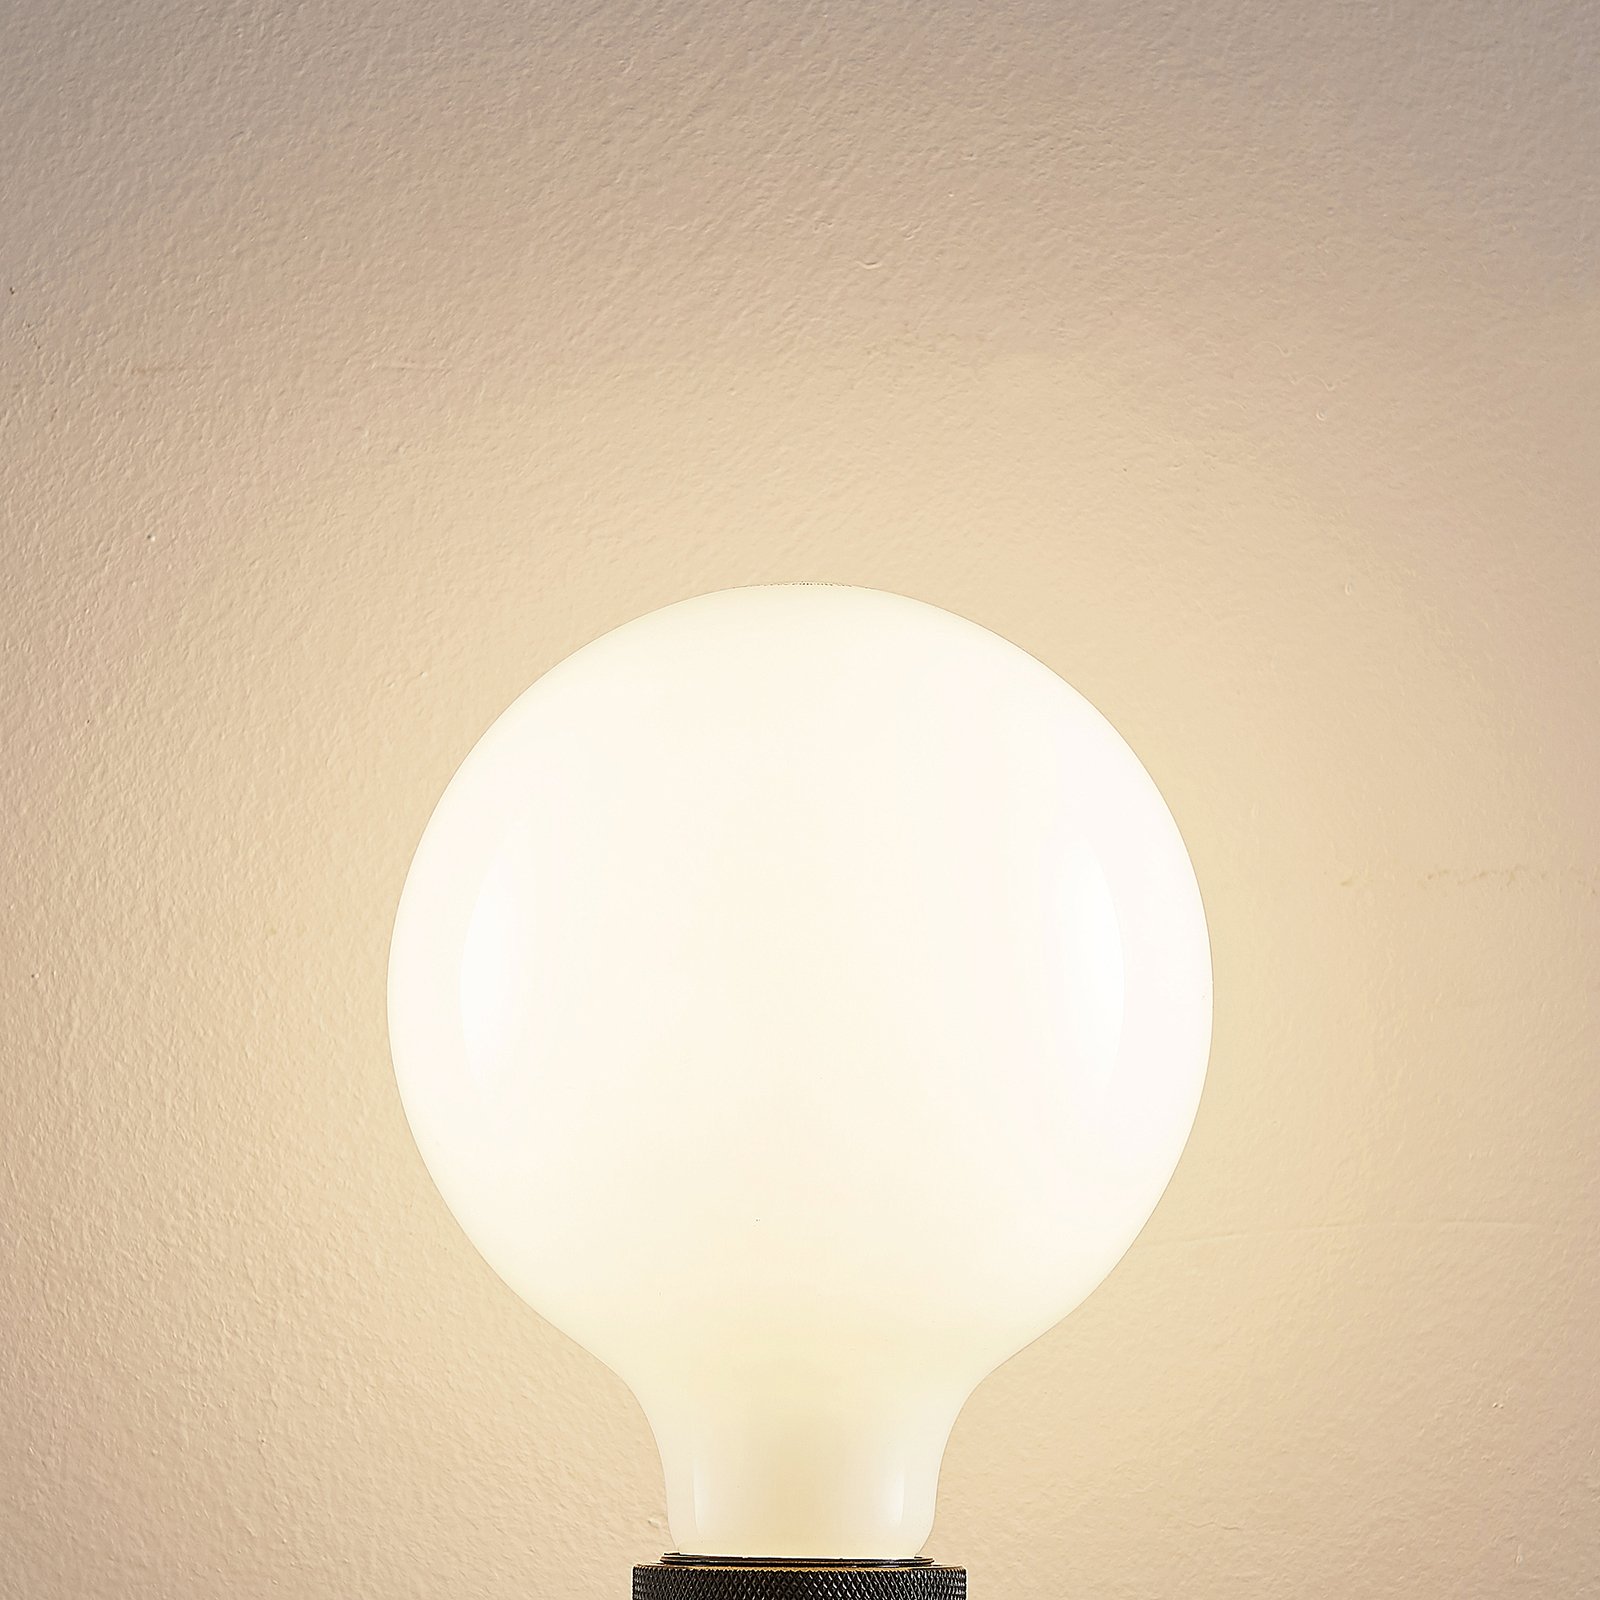 LED lamp E27 6W 2.700K G125 bollamp dimbaar, opaal